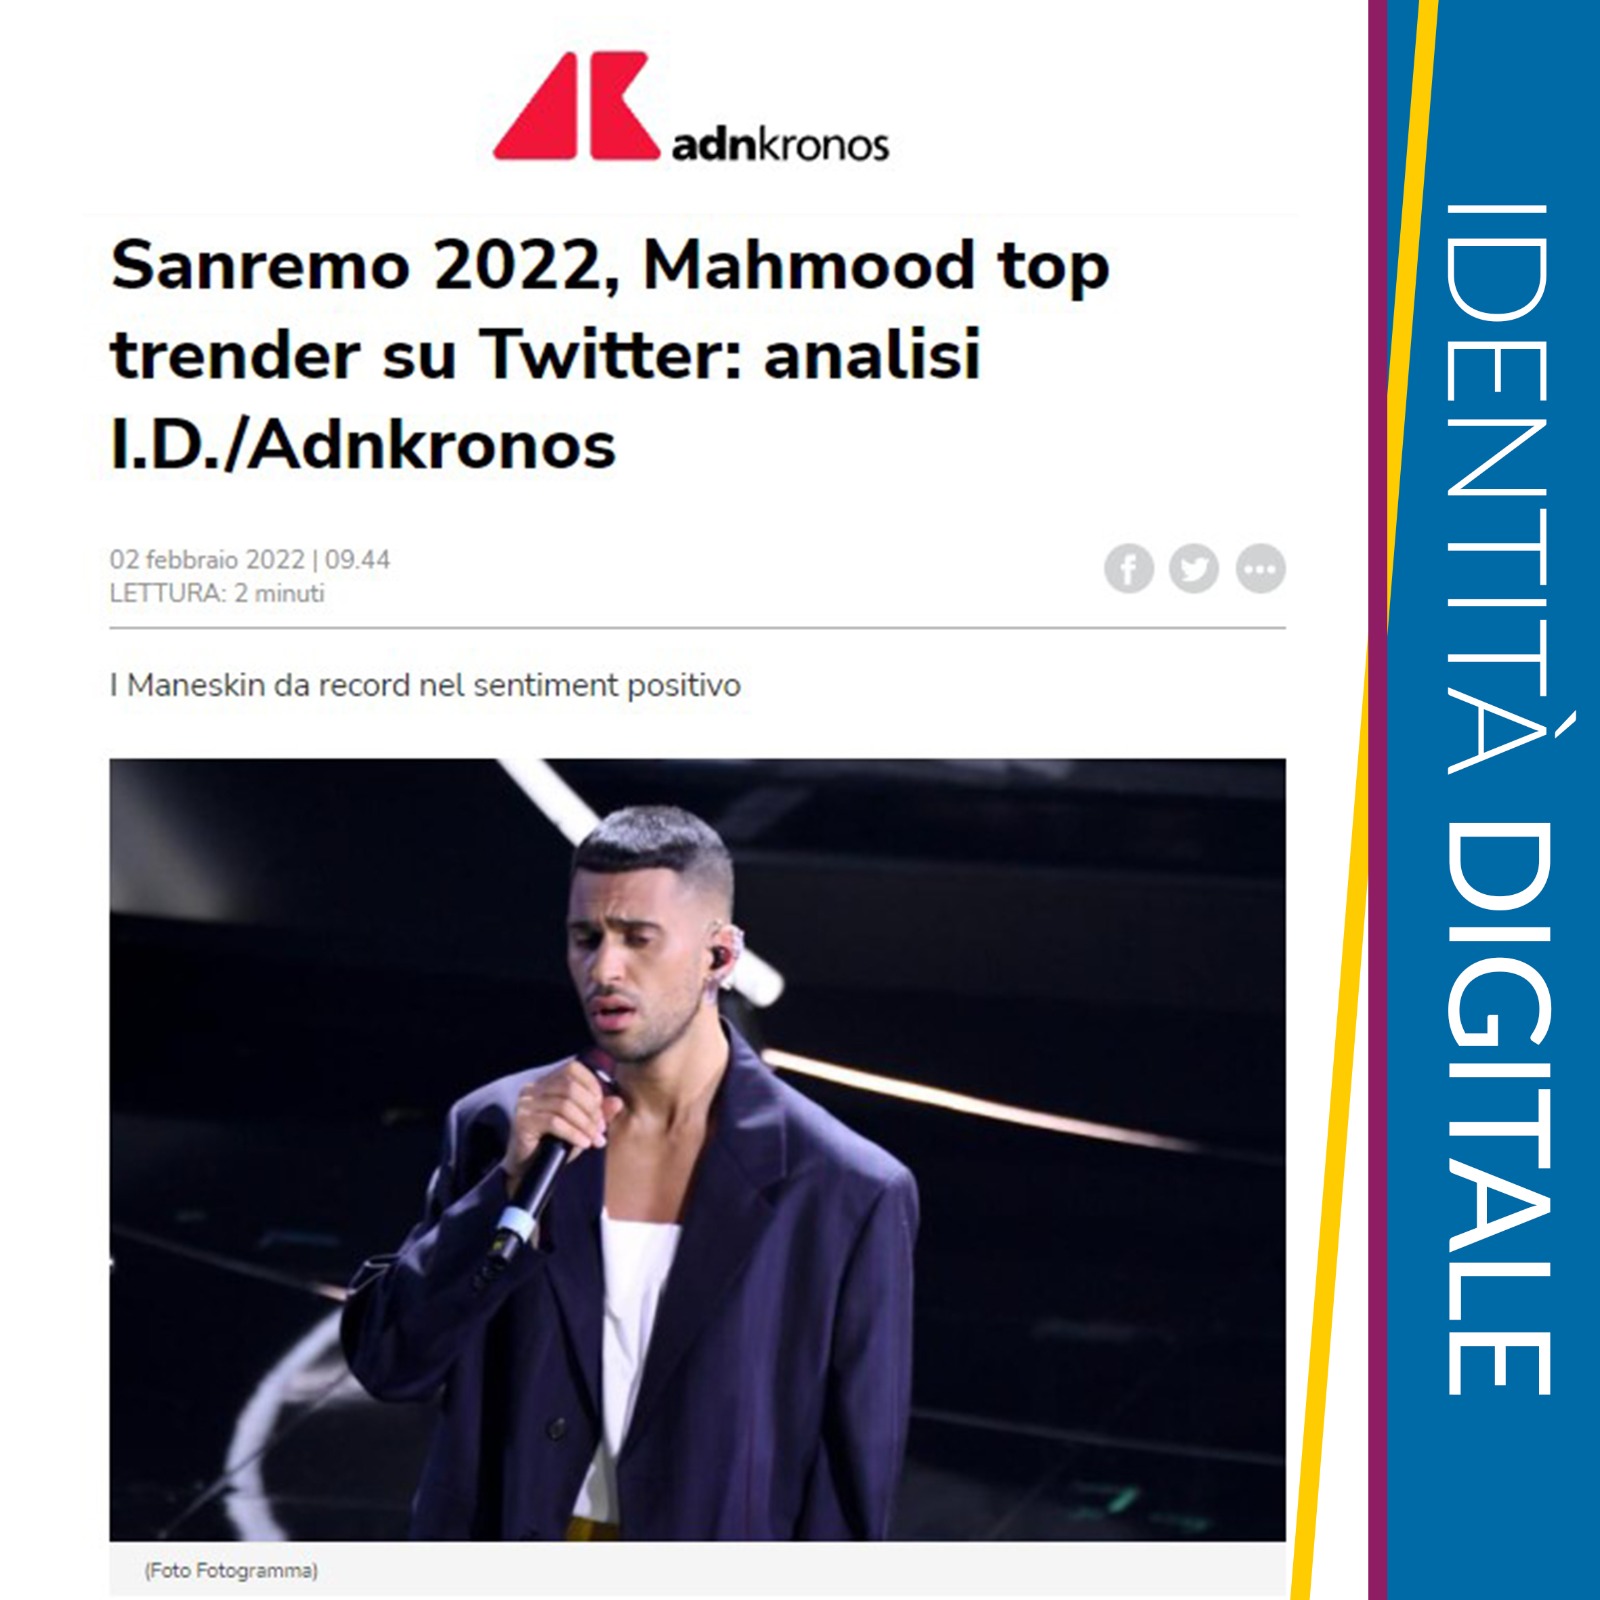 Sanremo, Mamhood top tendenze Twitter con 67k citazioni, i Maneskin record sentiment positivo